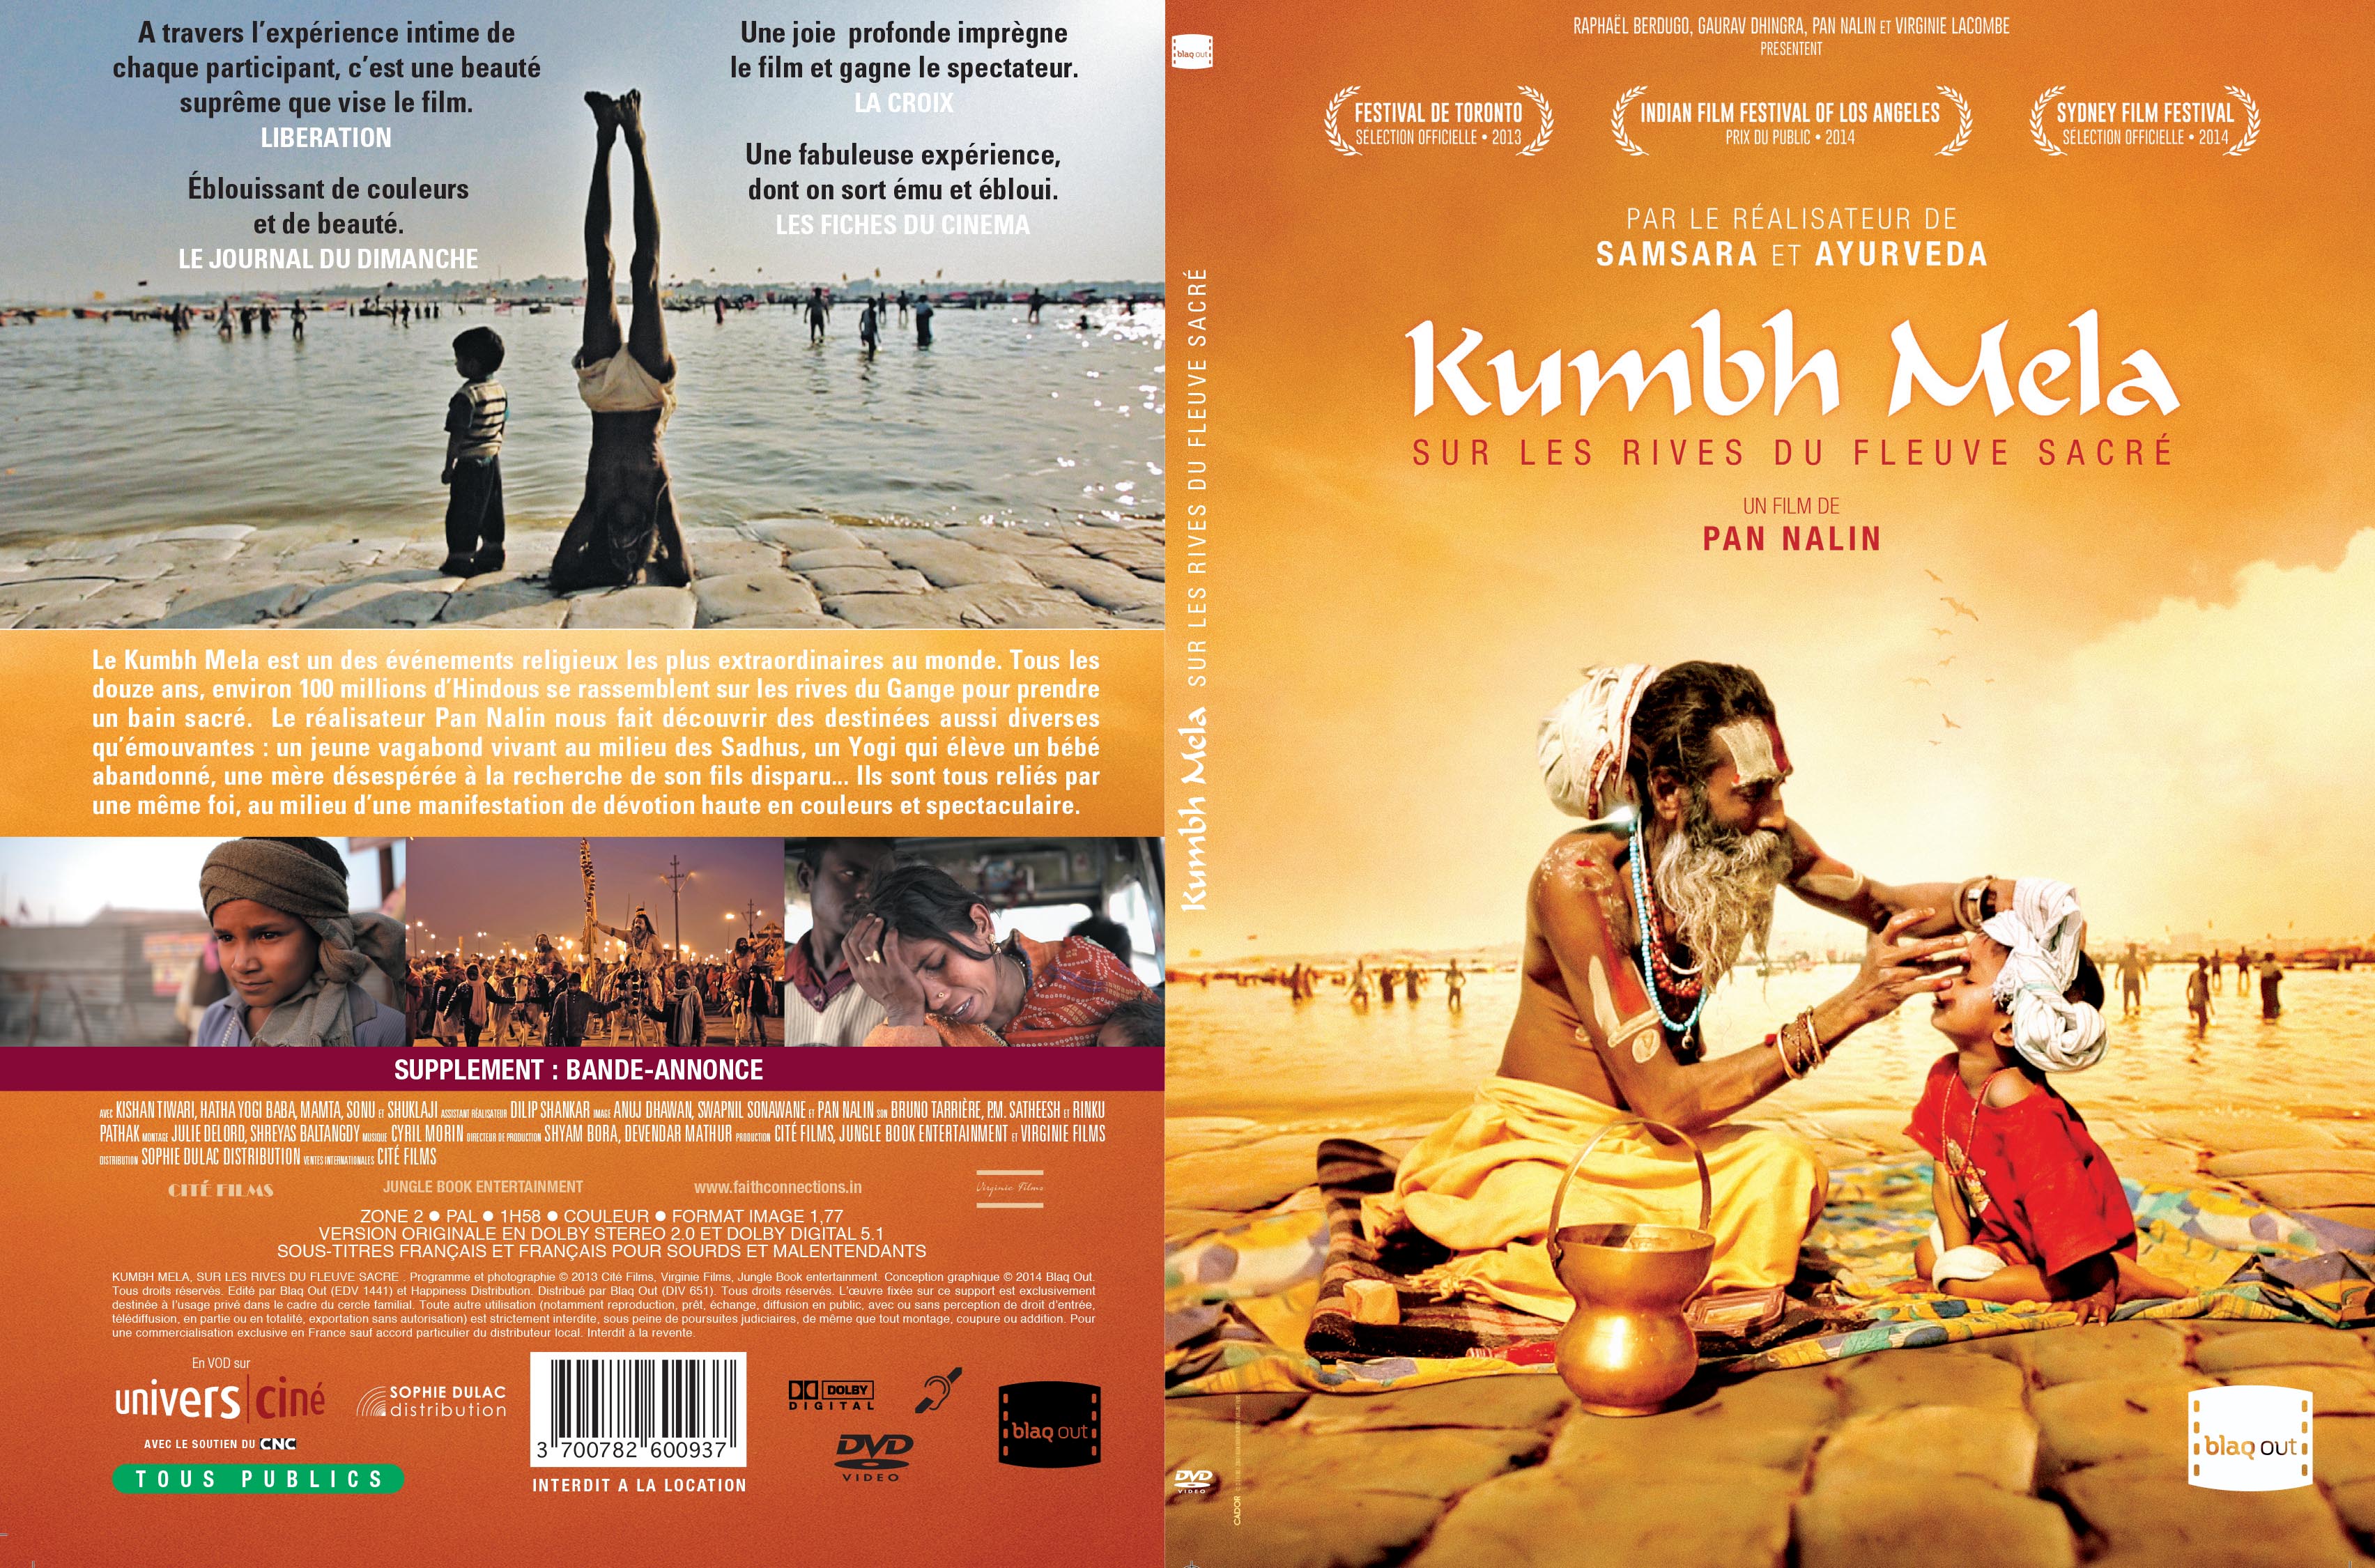 Jaquette DVD Kumbh mela sur les rives du fleuve sacre